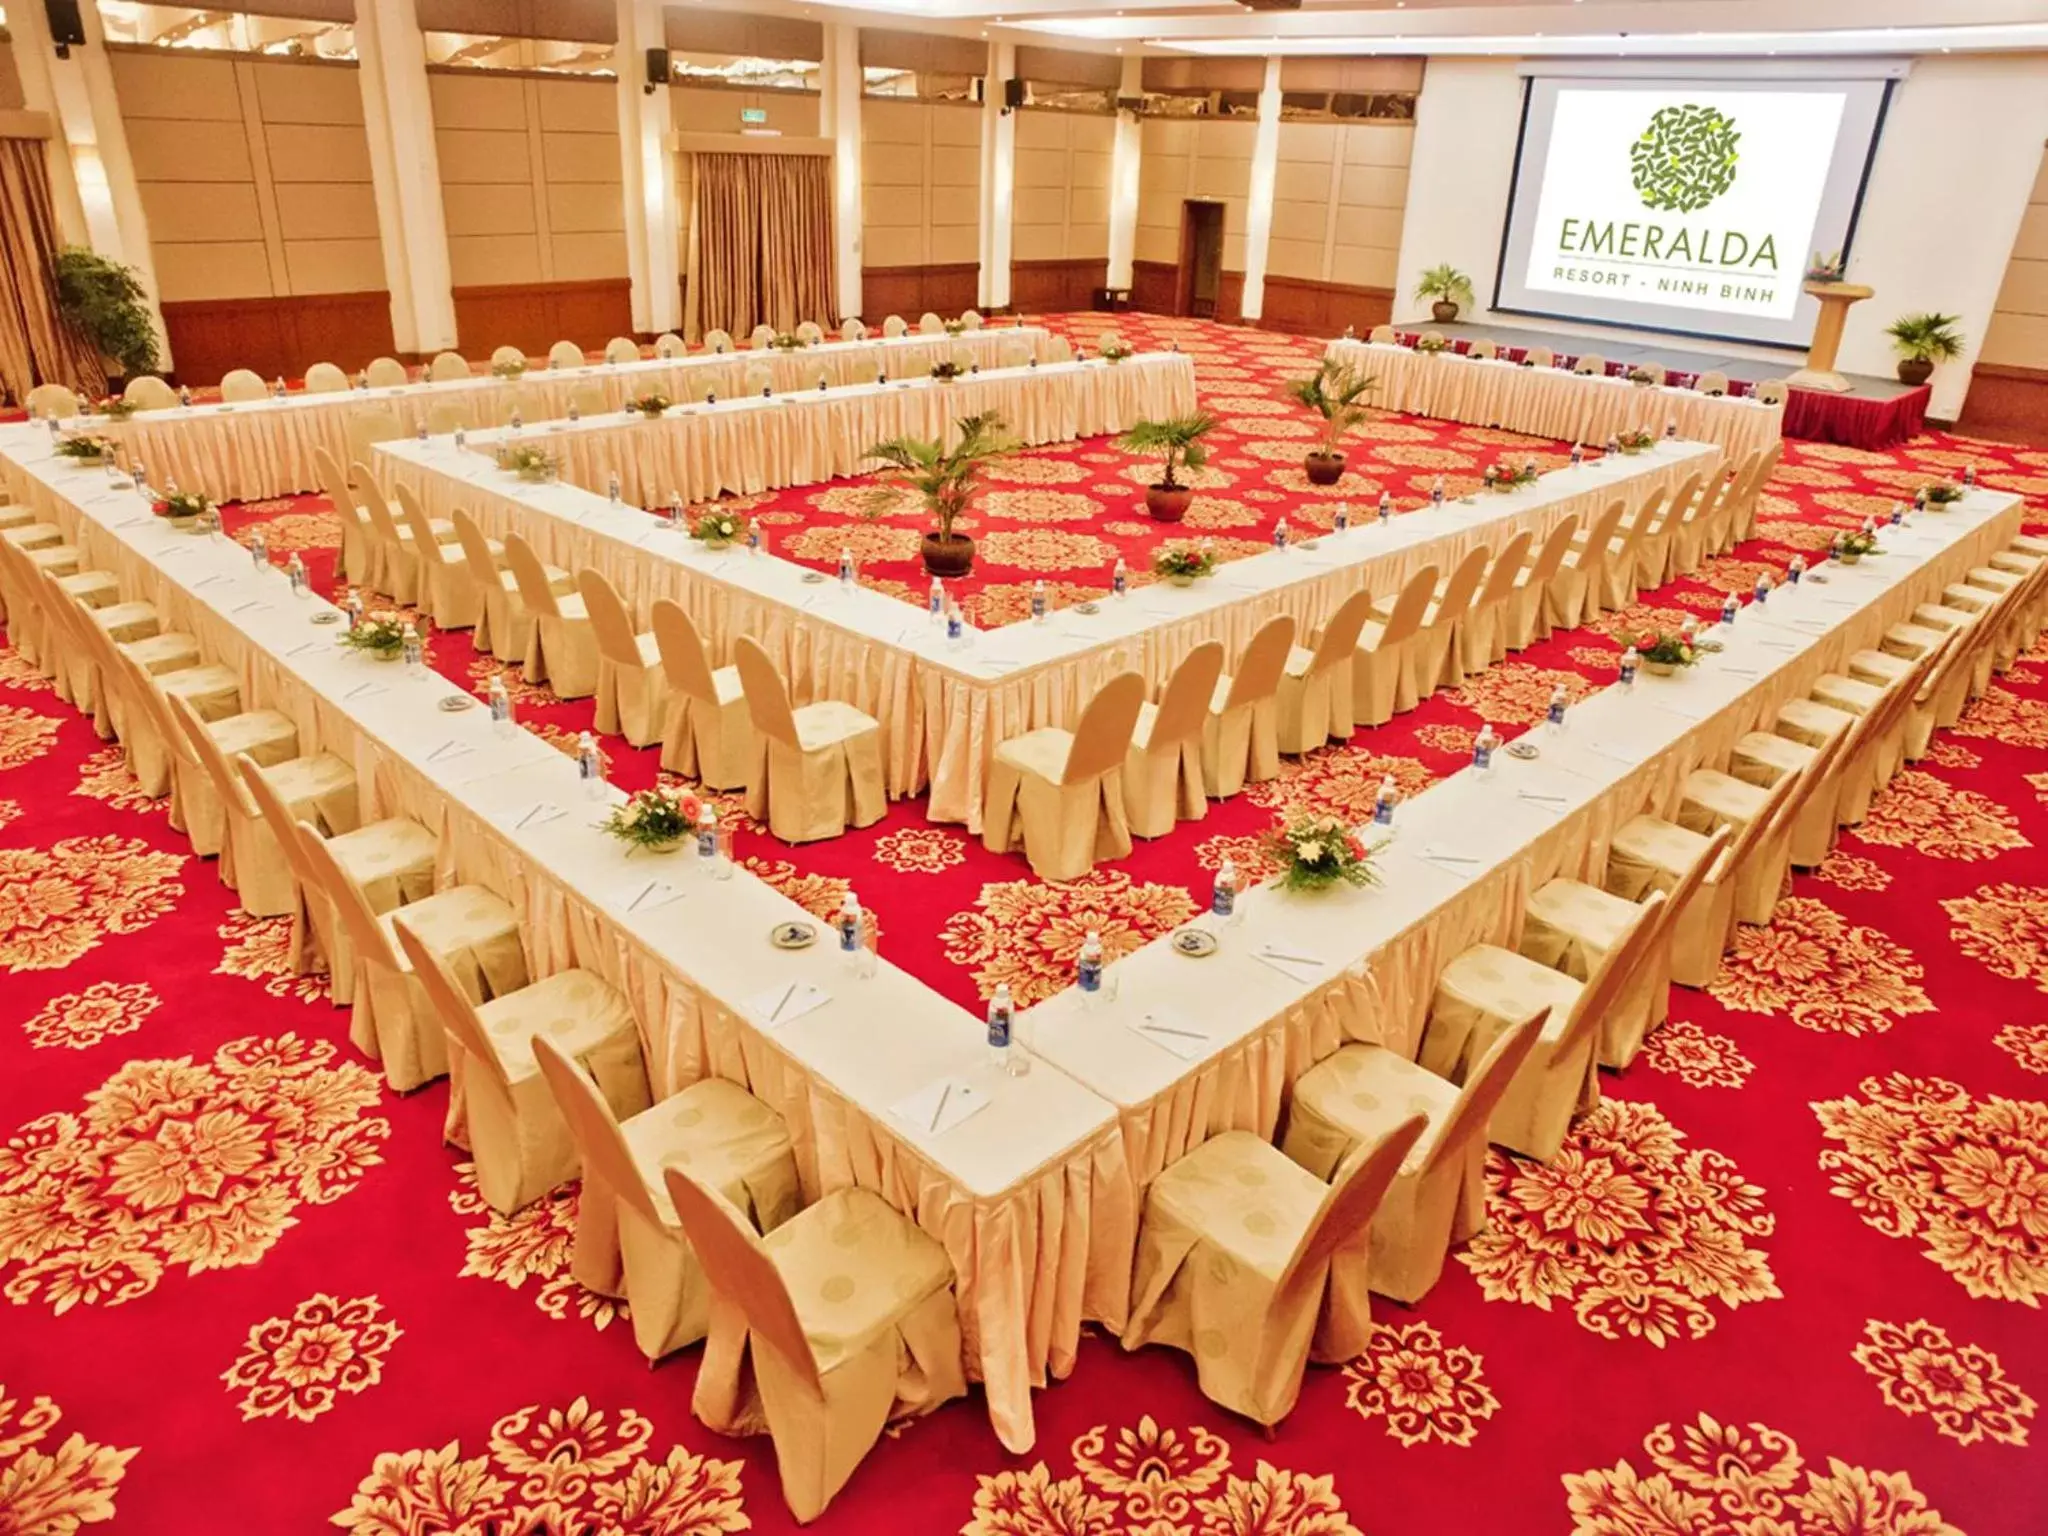 Banquet/Function facilities, Banquet Facilities in Emeralda Resort Ninh Binh